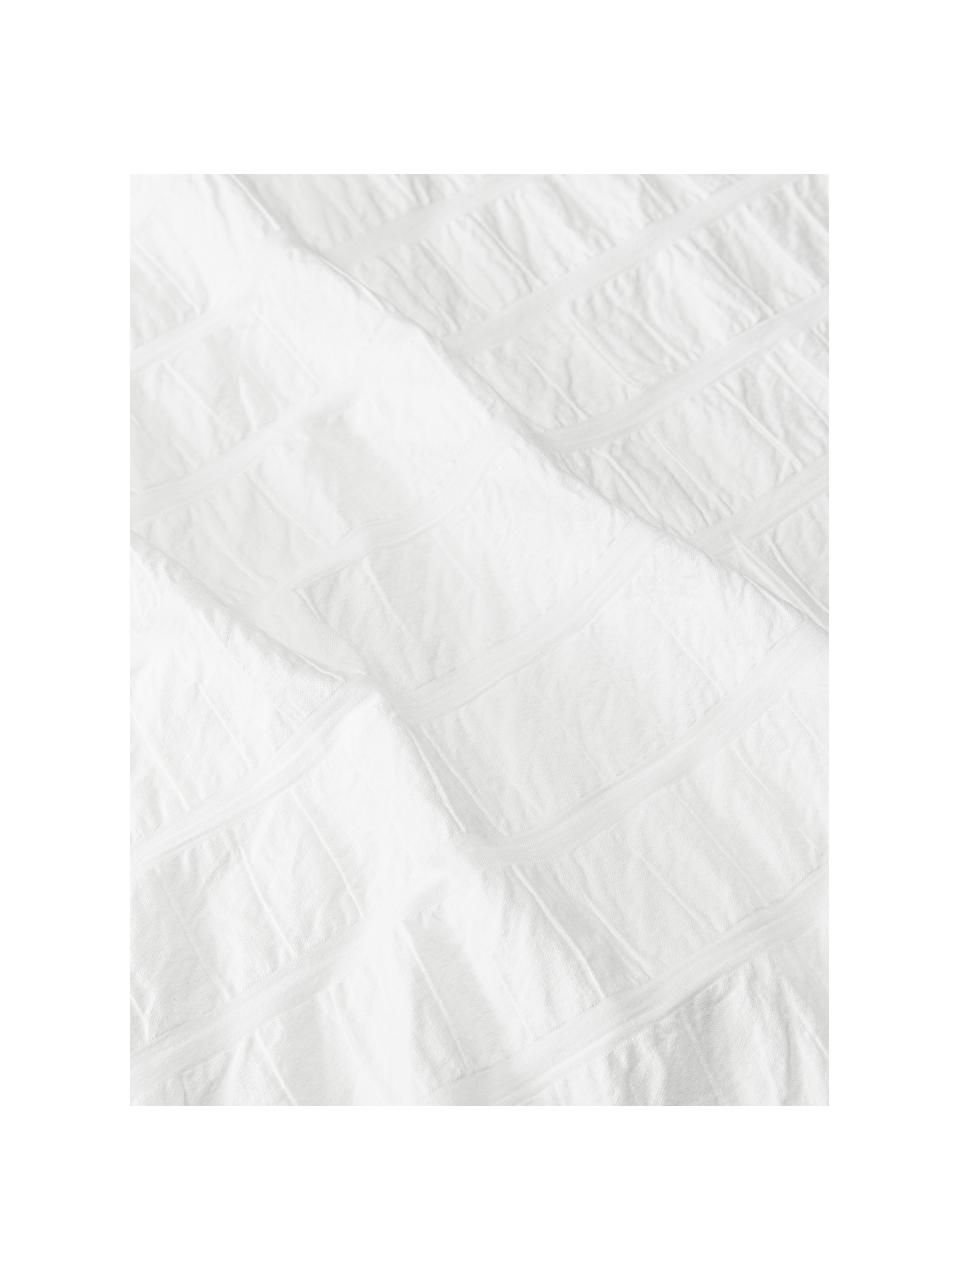 Dubbelzijdig katoenen dekbedovertrek Esme in wit, Wit, B 200 cm x L 200 cm